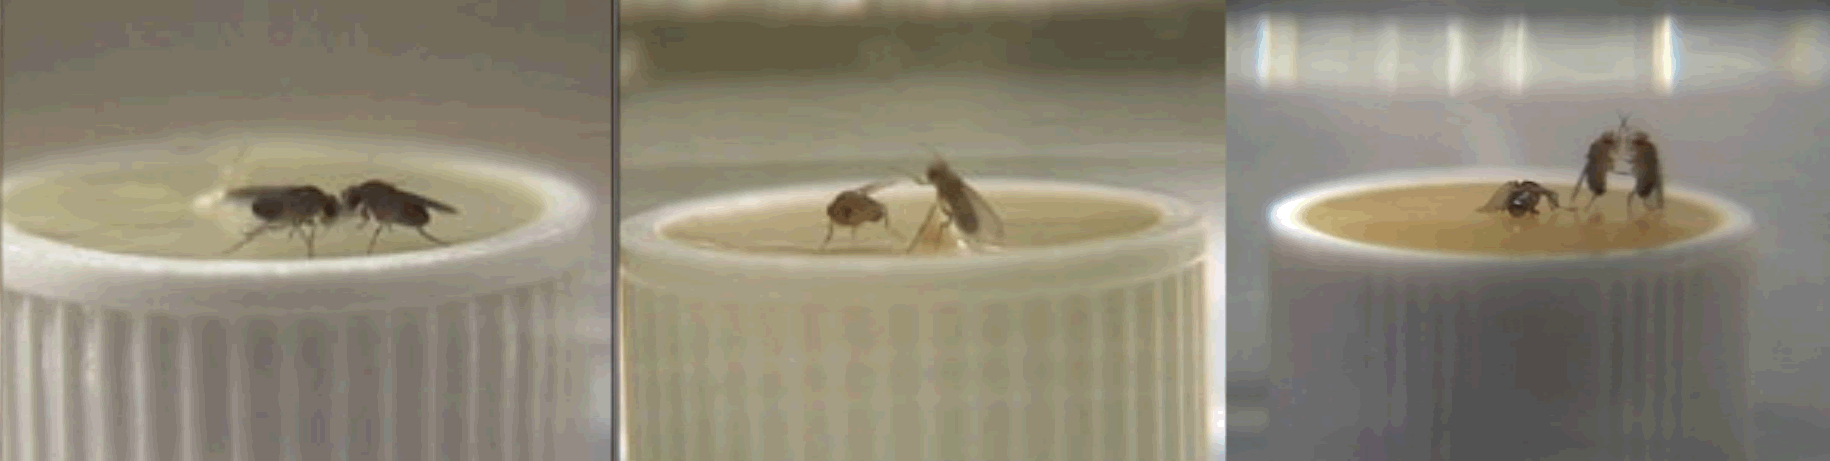 moscas peleando